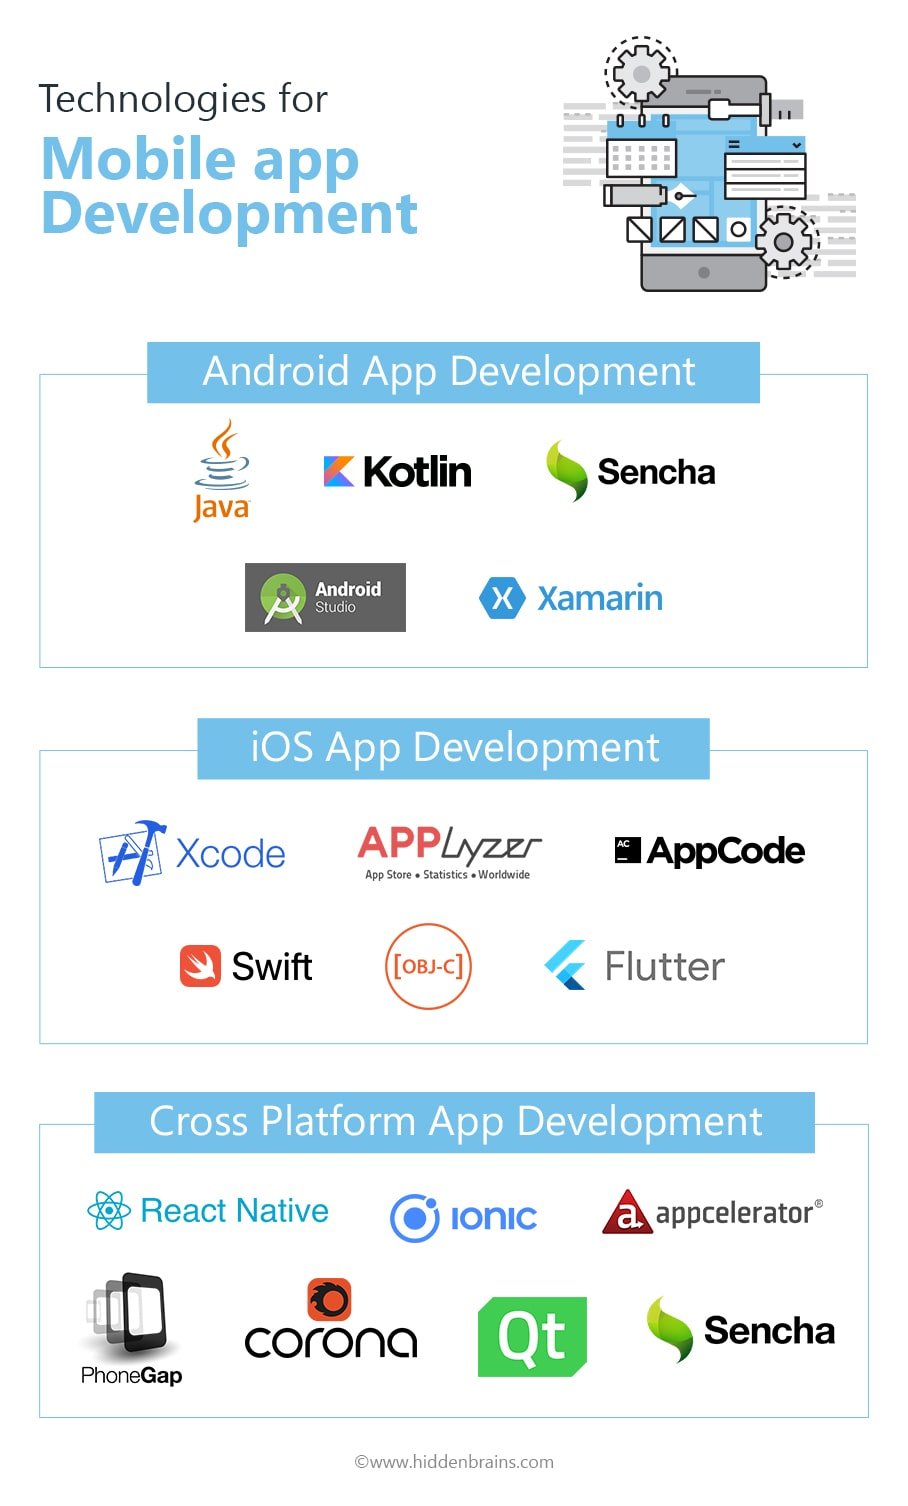 Technologies for Mobile app development 